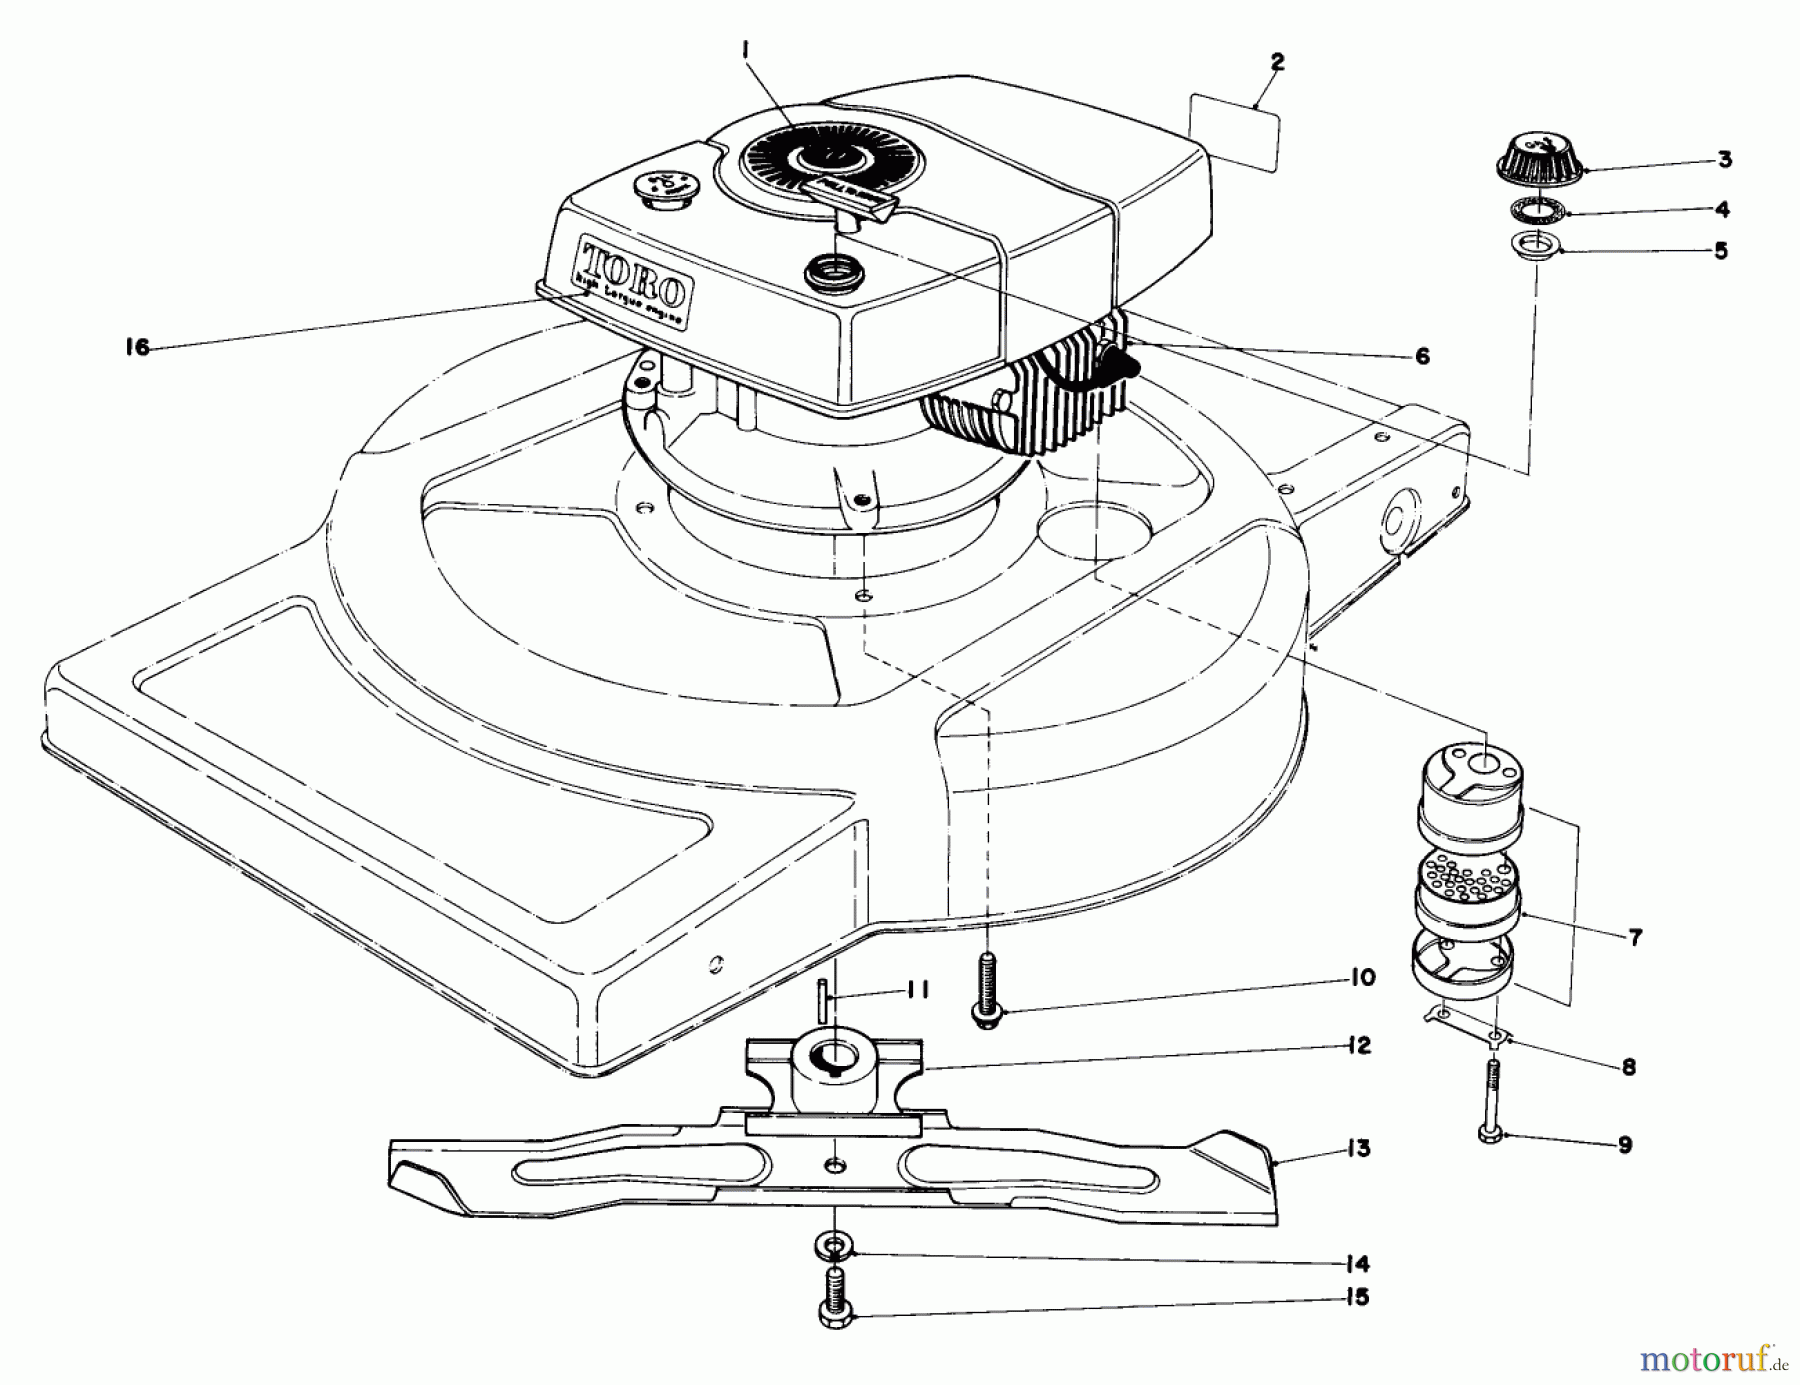  Toro Neu Mowers, Walk-Behind Seite 1 18015 - Toro Lawnmower, 1978 (8000001-8999999) ENGINE ASSEMBLY MODEL 18015